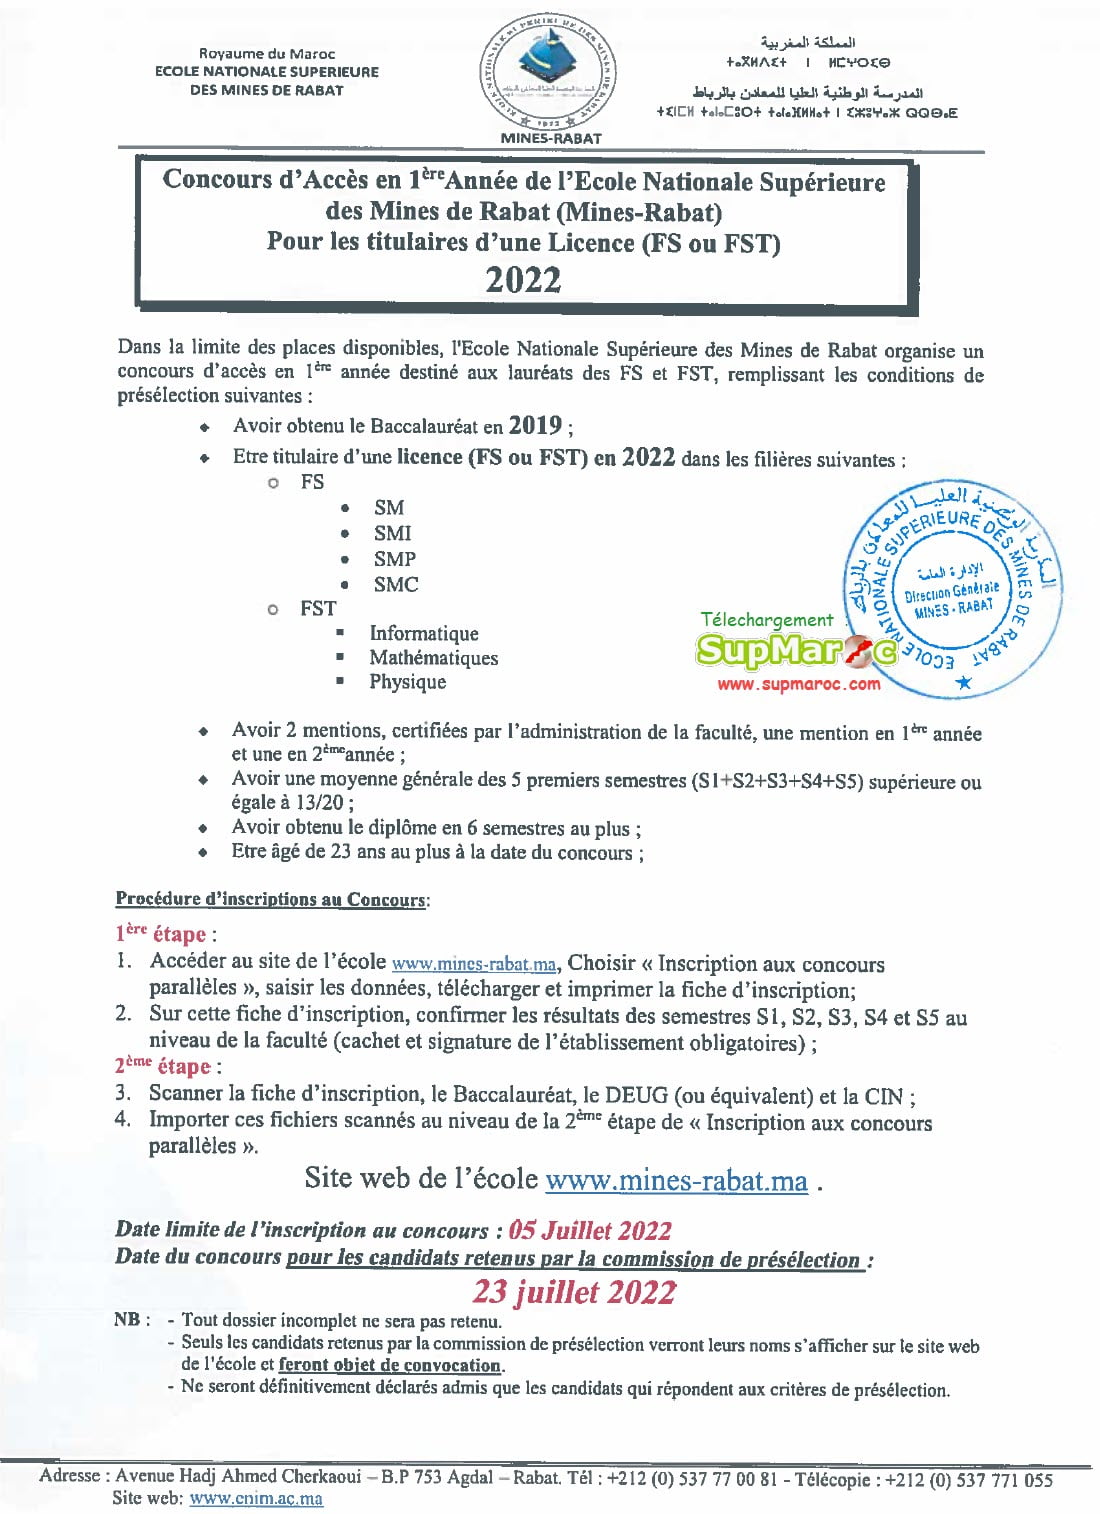 Mines Rabat Concours 1ère année titulaire Licence 2022-2023